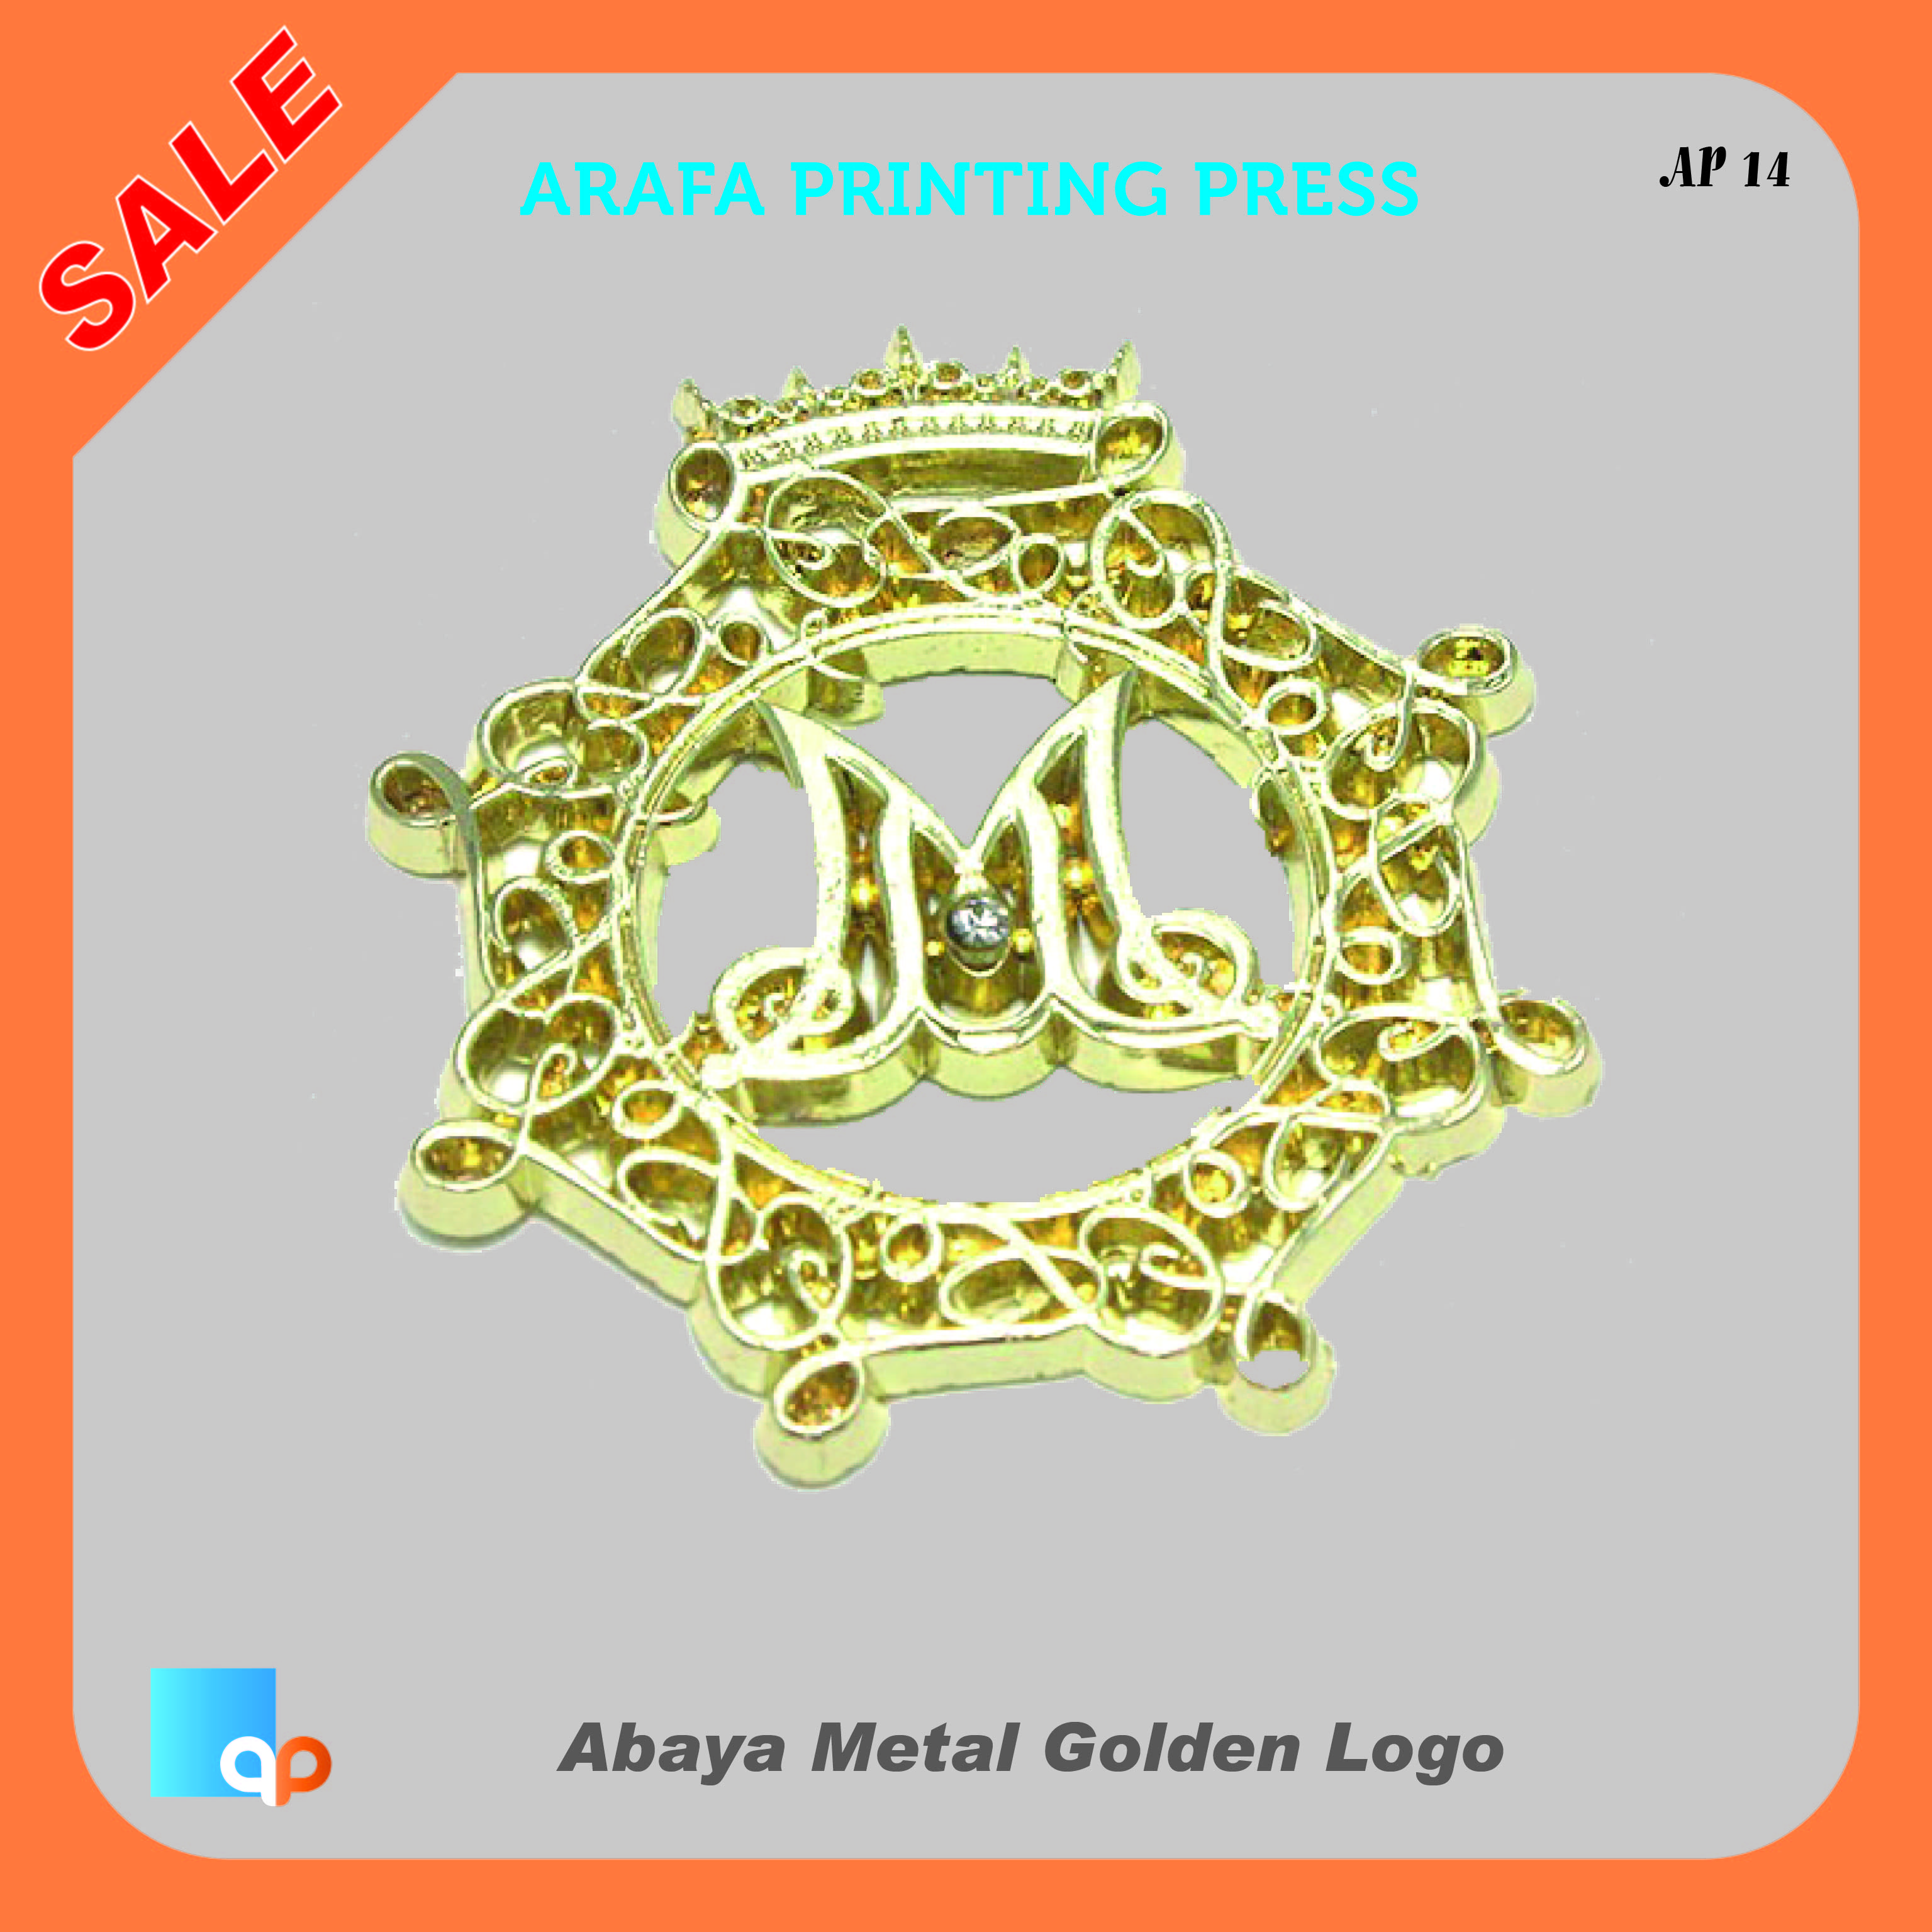 Metal logo printing in Dubai